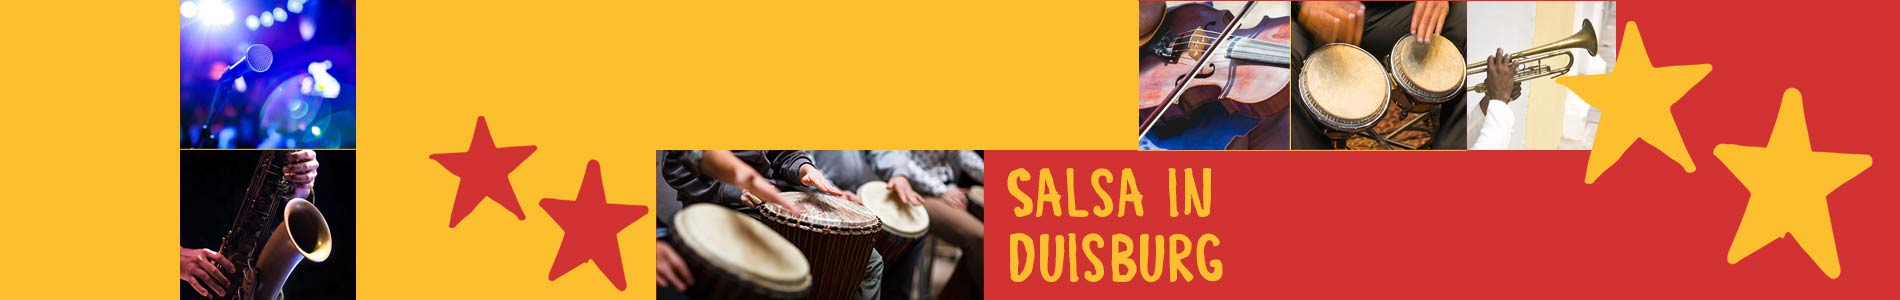 Salsa in Duisburg – Salsa lernen und tanzen, Tanzkurse, Partys, Veranstaltungen